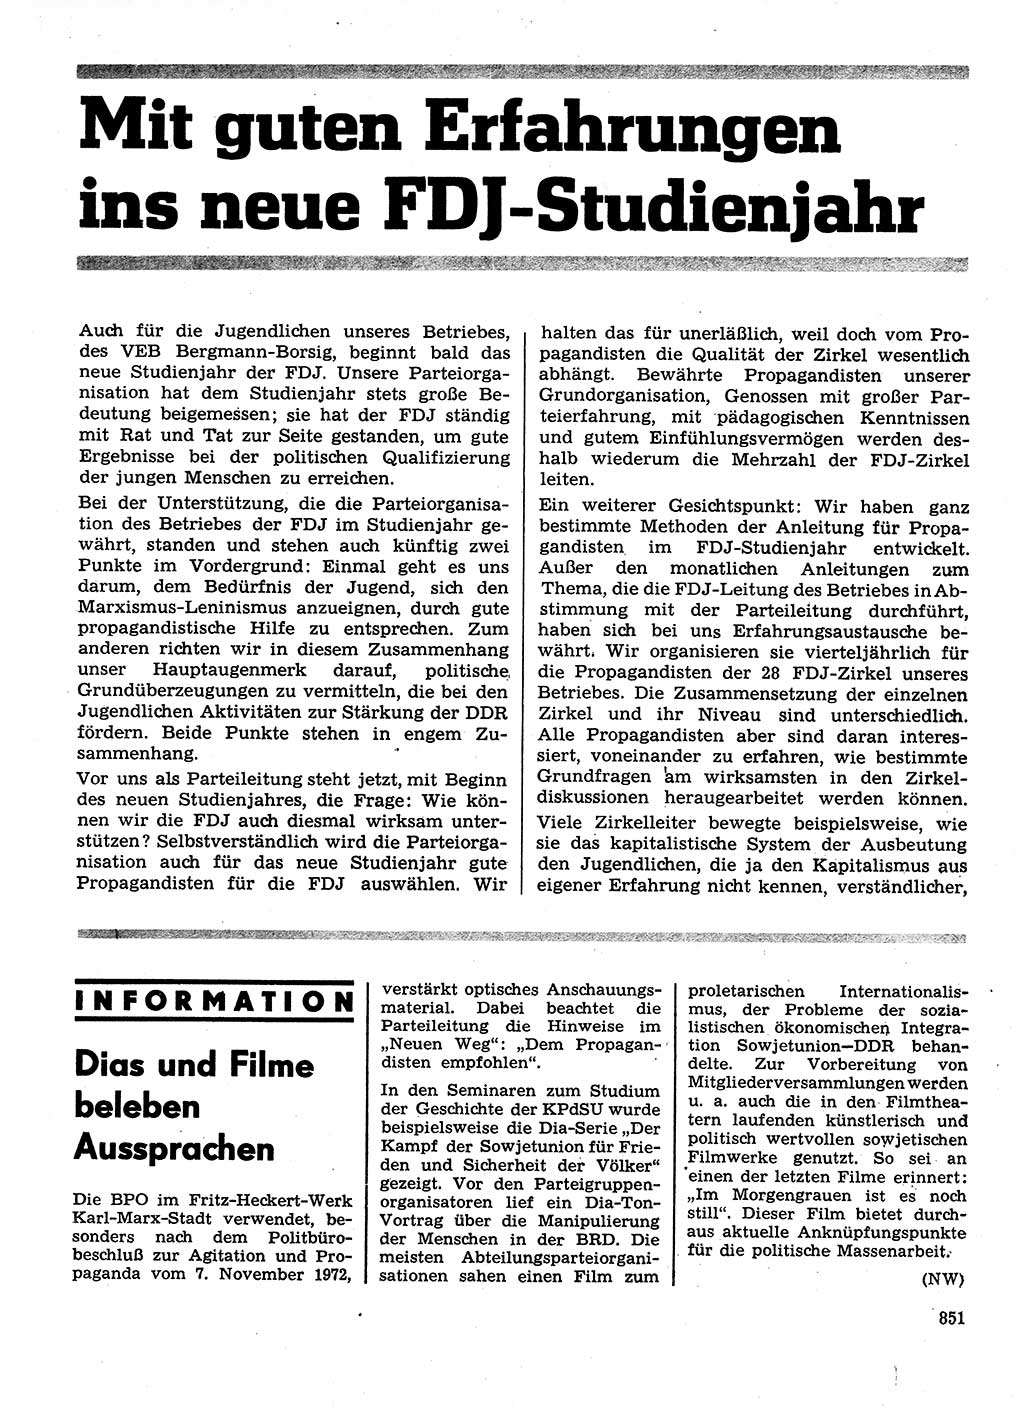 Neuer Weg (NW), Organ des Zentralkomitees (ZK) der SED (Sozialistische Einheitspartei Deutschlands) für Fragen des Parteilebens, 28. Jahrgang [Deutsche Demokratische Republik (DDR)] 1973, Seite 851 (NW ZK SED DDR 1973, S. 851)